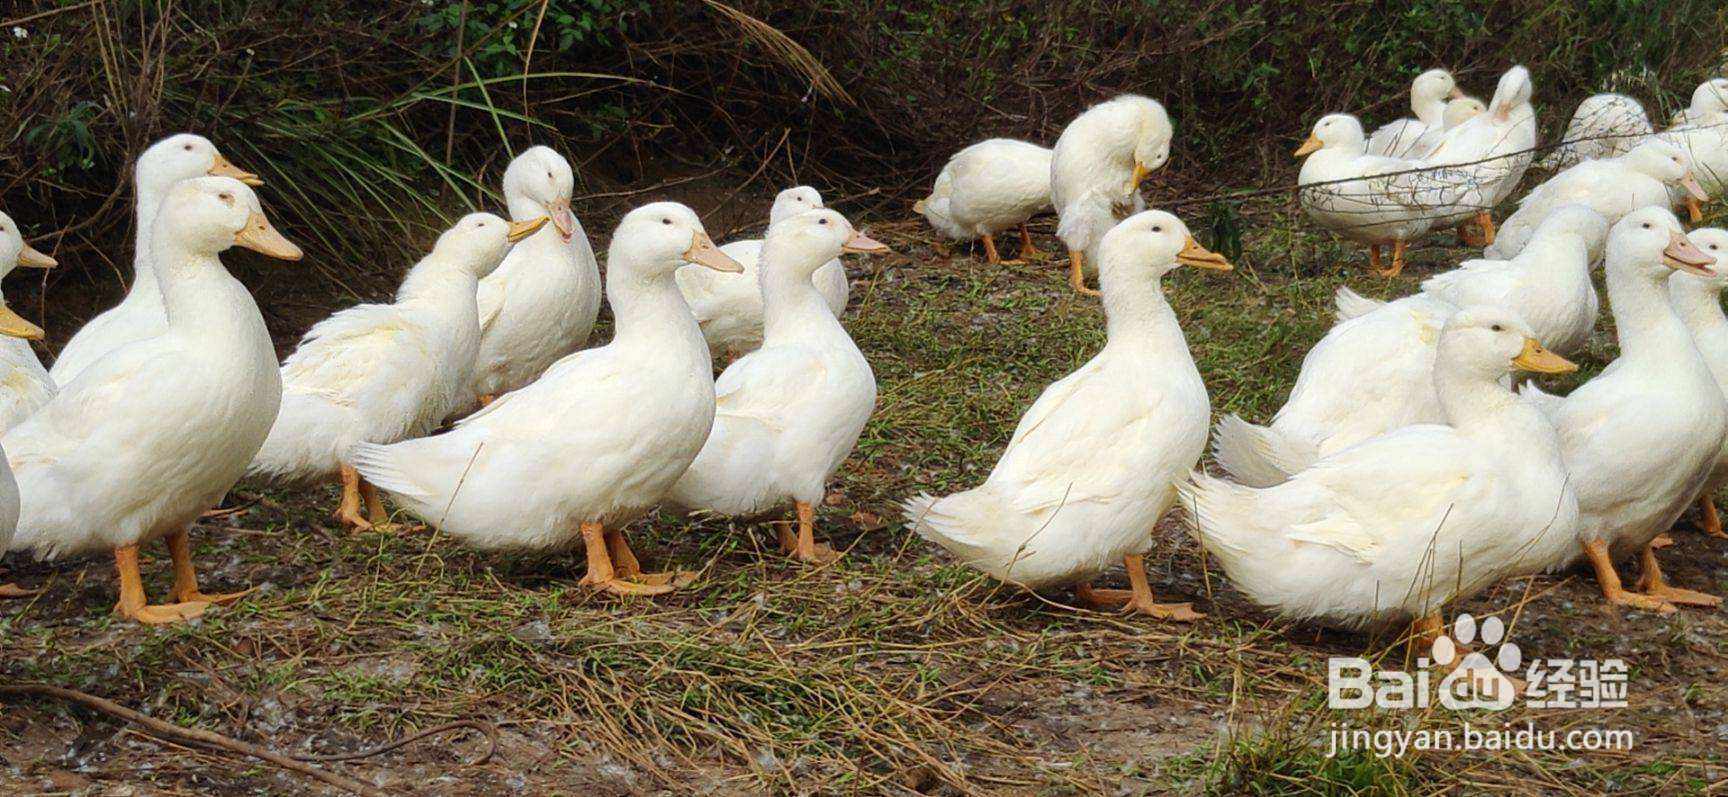 禽医顾顾谈造成鸭群肠炎、拉稀、水泻的原因及解决办法 - 知乎